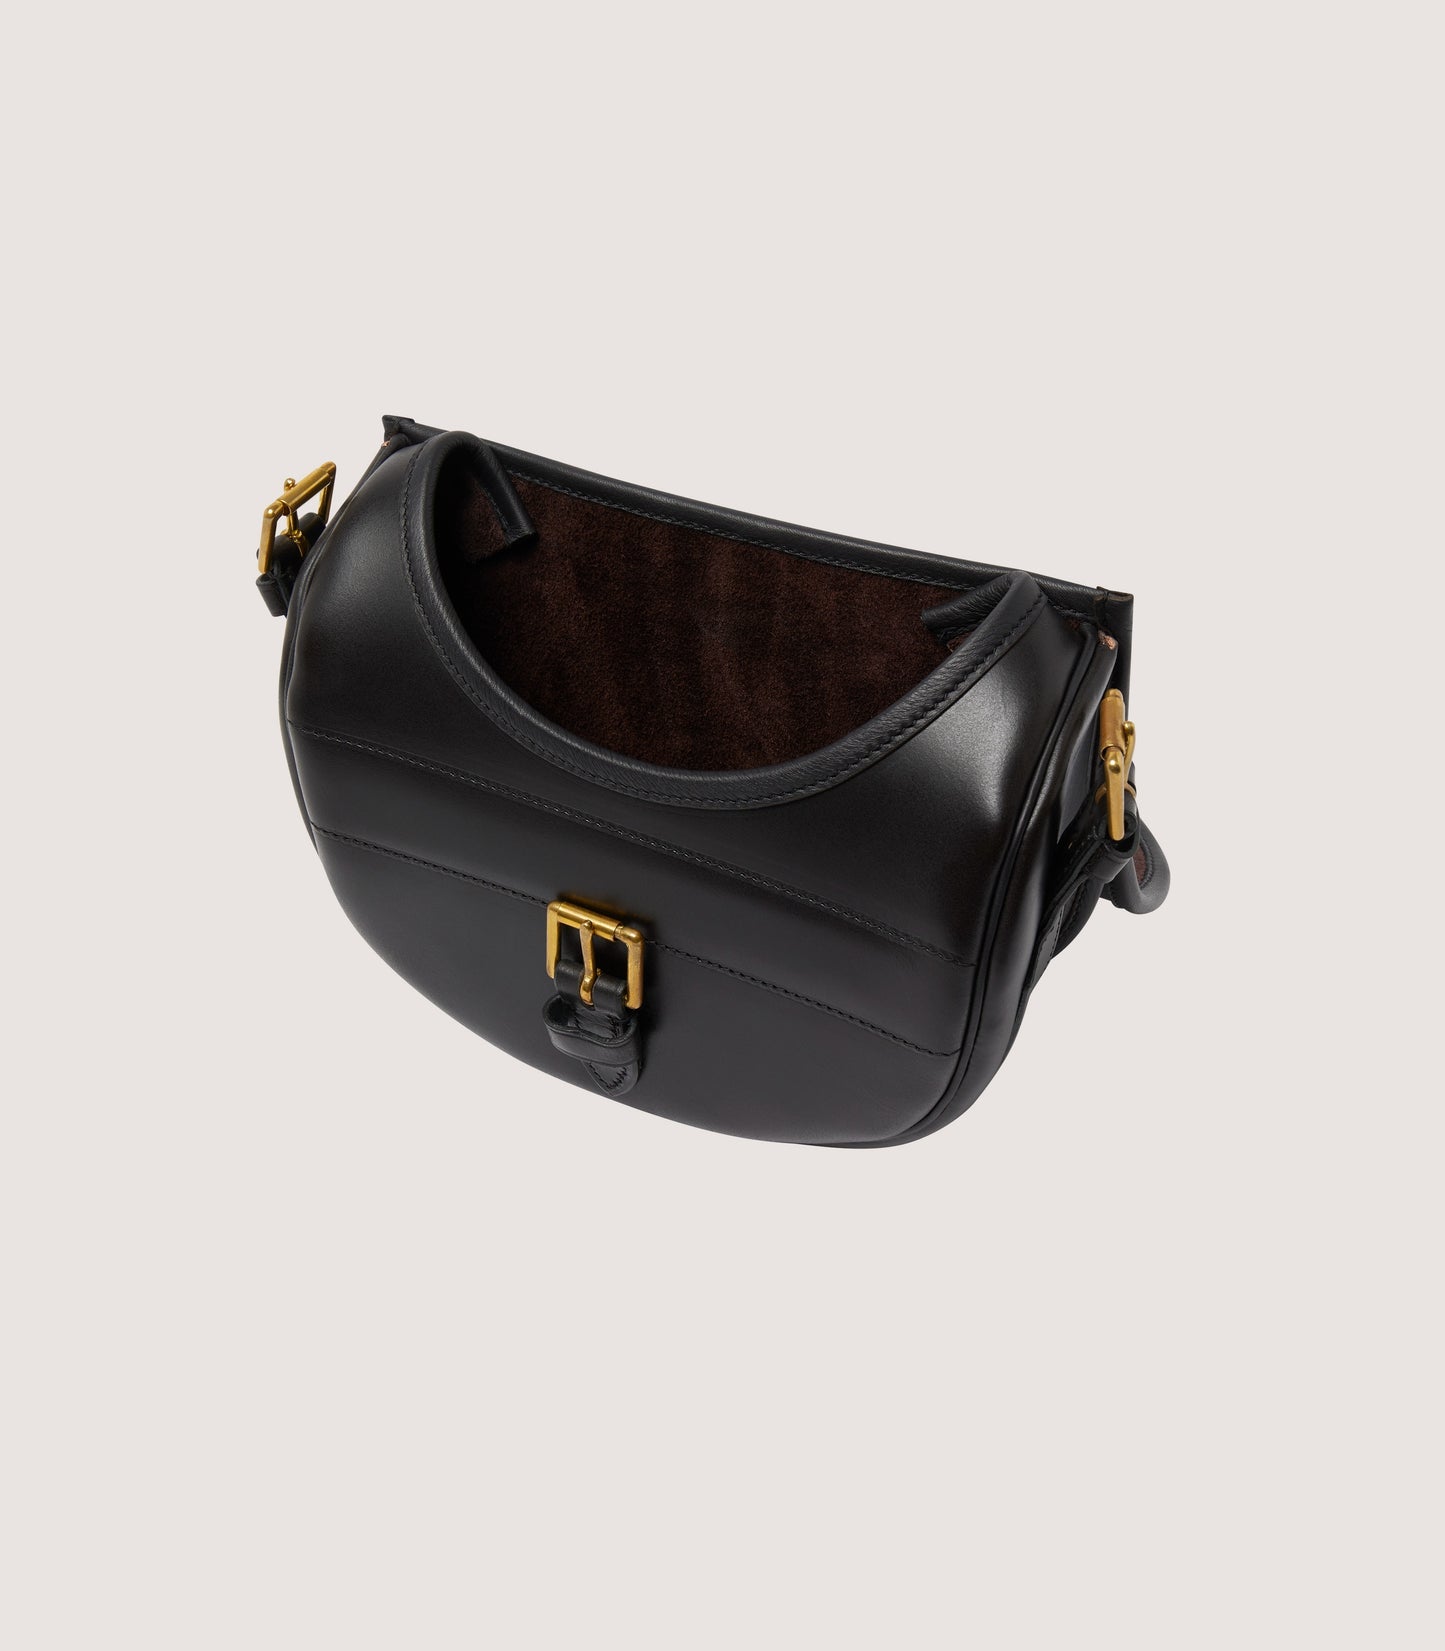 Bridle Leather Cartridge Bag In Dark Brown.